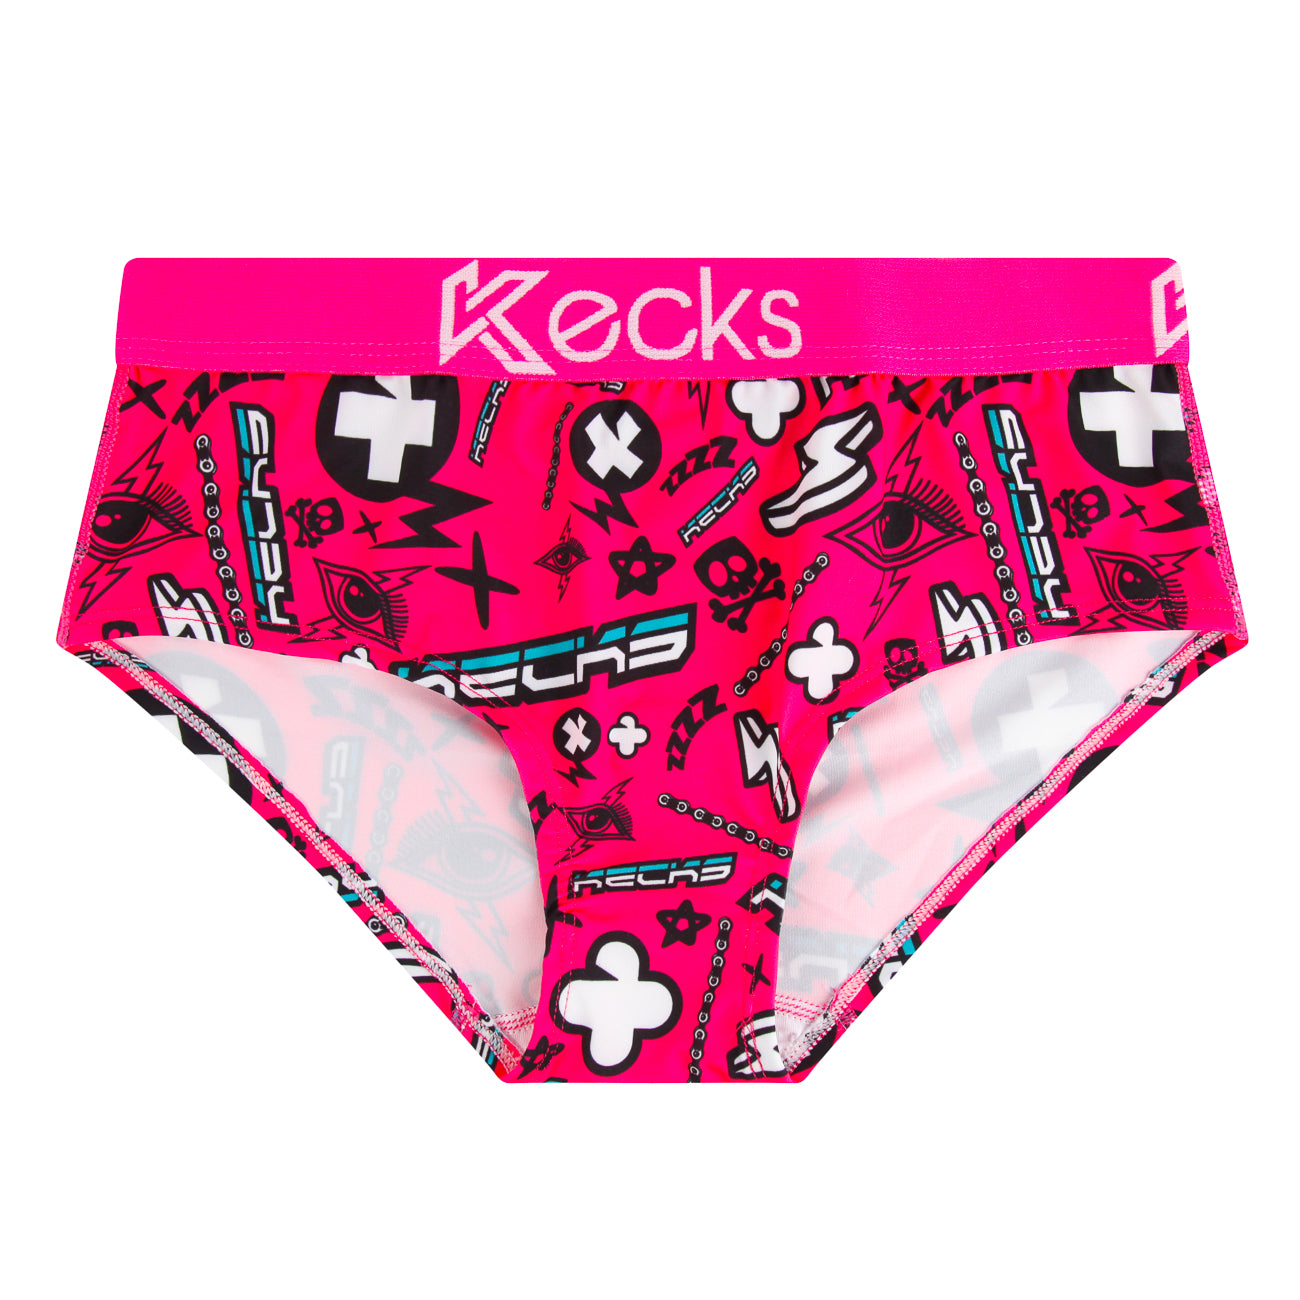 Kecks -  UK